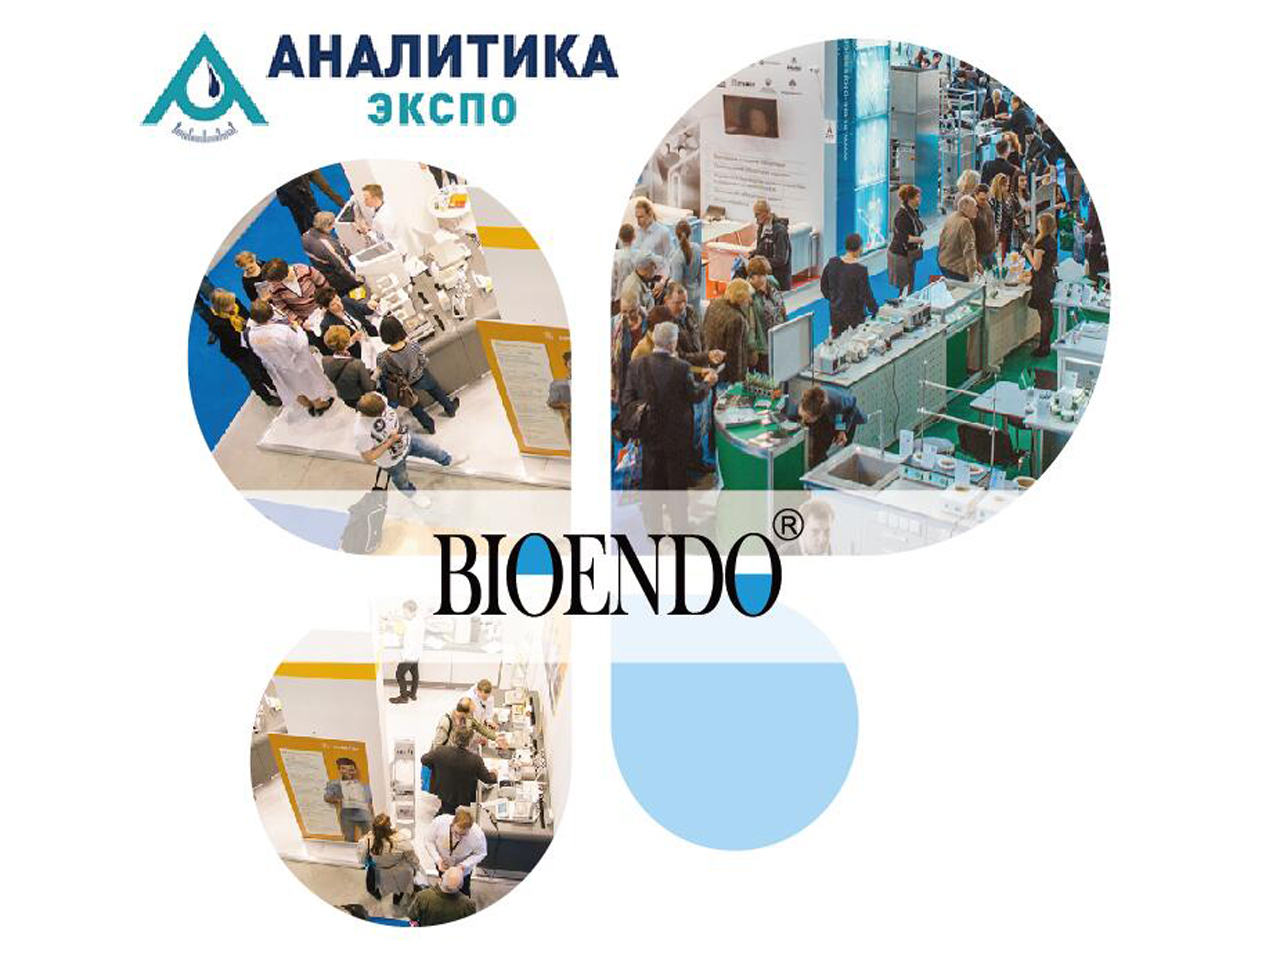 2019 รัสเซีย มอสโก การแสดงเครื่องมือในห้องปฏิบัติการและสารเคมีรีเอเจนต์